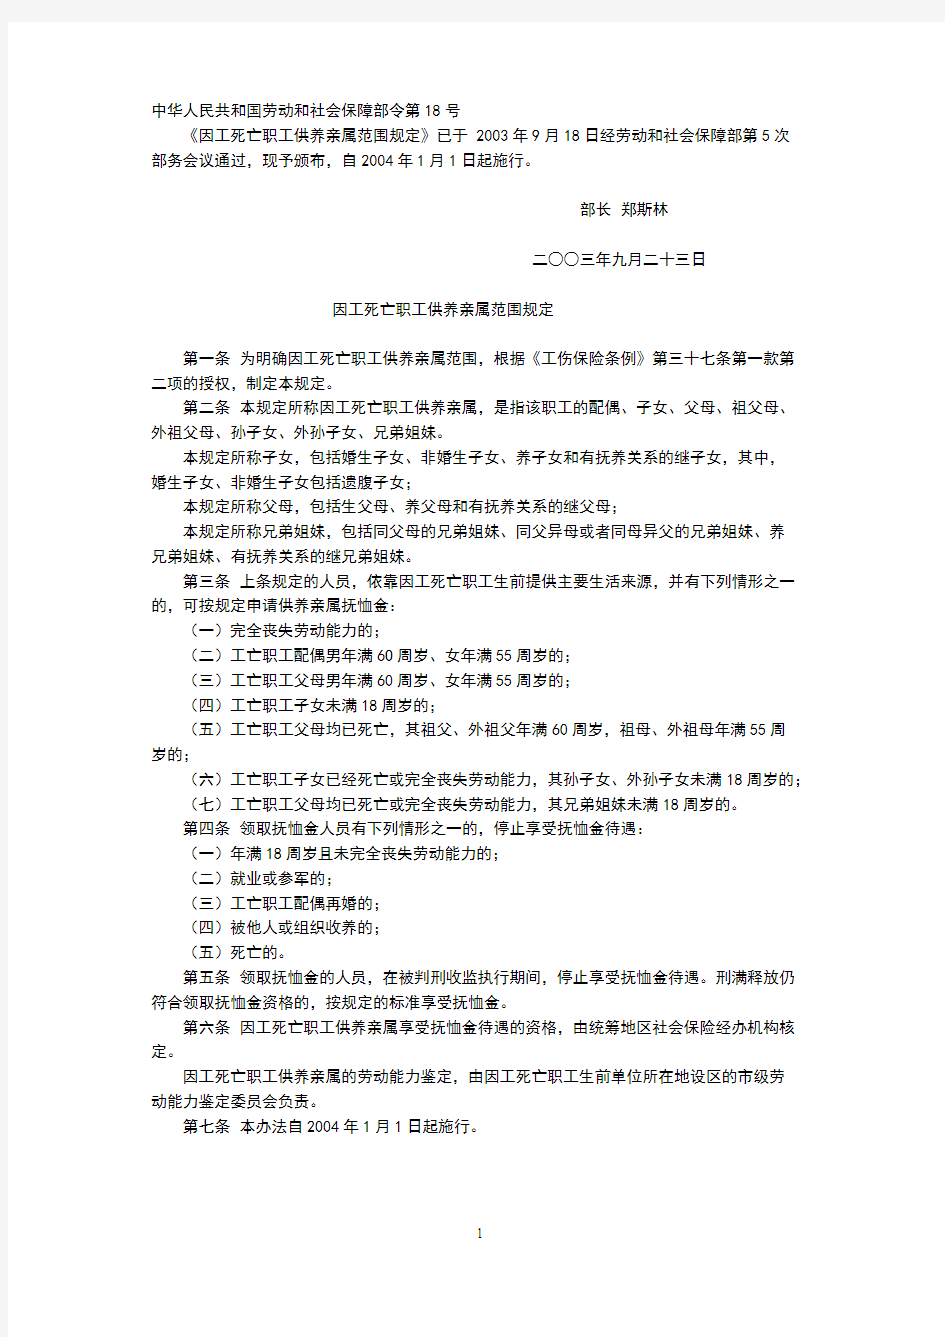 中华人民共和国劳动和社会保障部令第18号